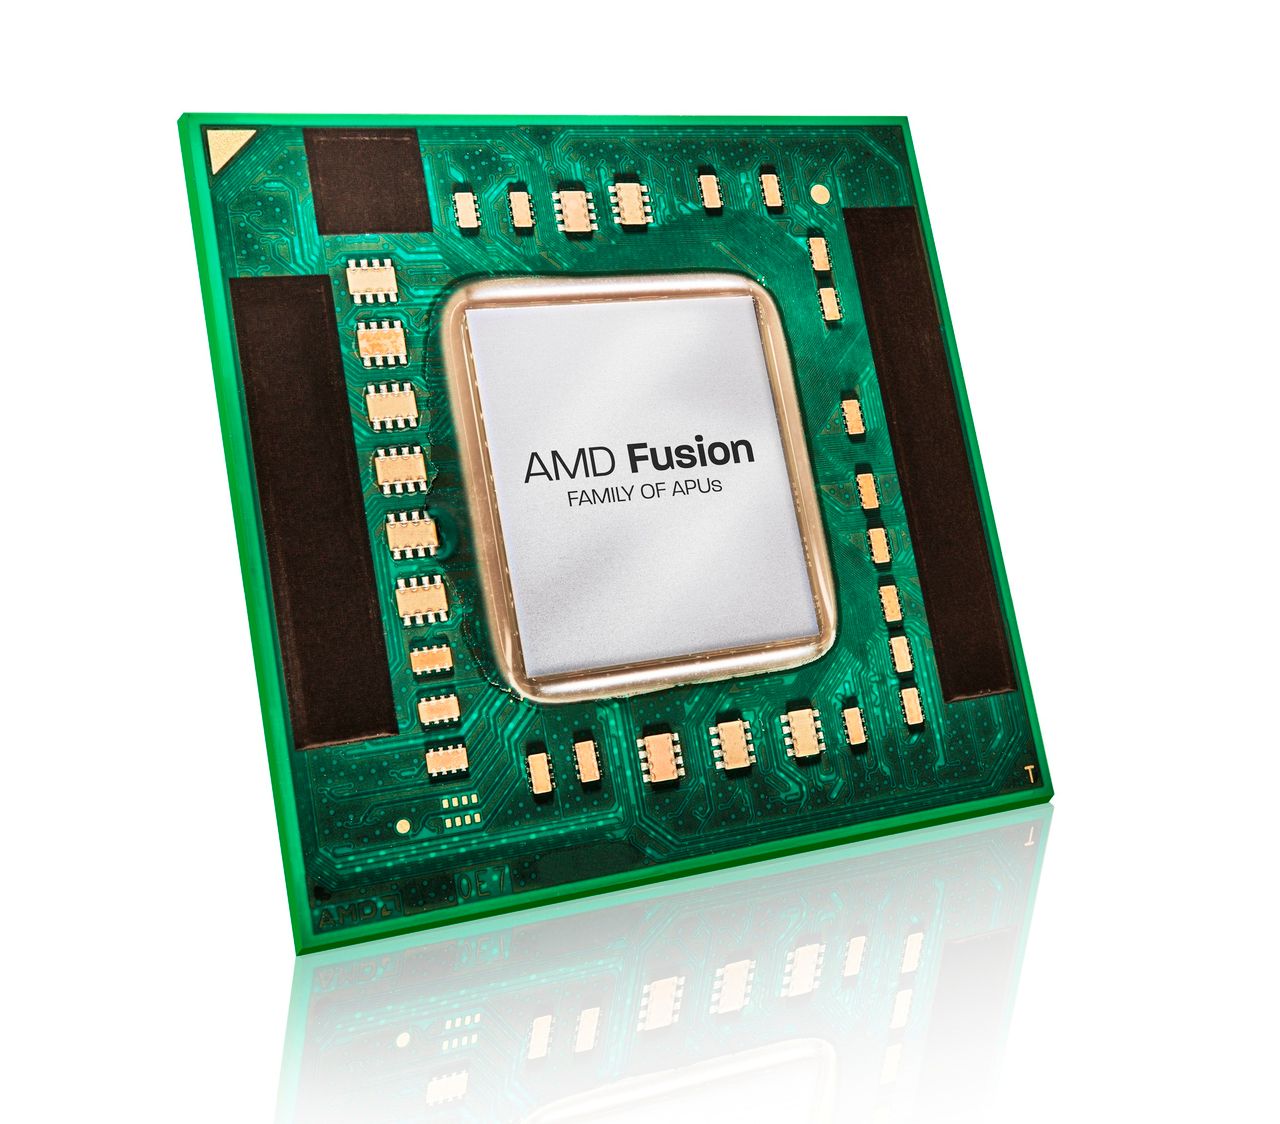 Procesory AMD ze średniej półki będą szybsze i bardziej efektywne energetycznie